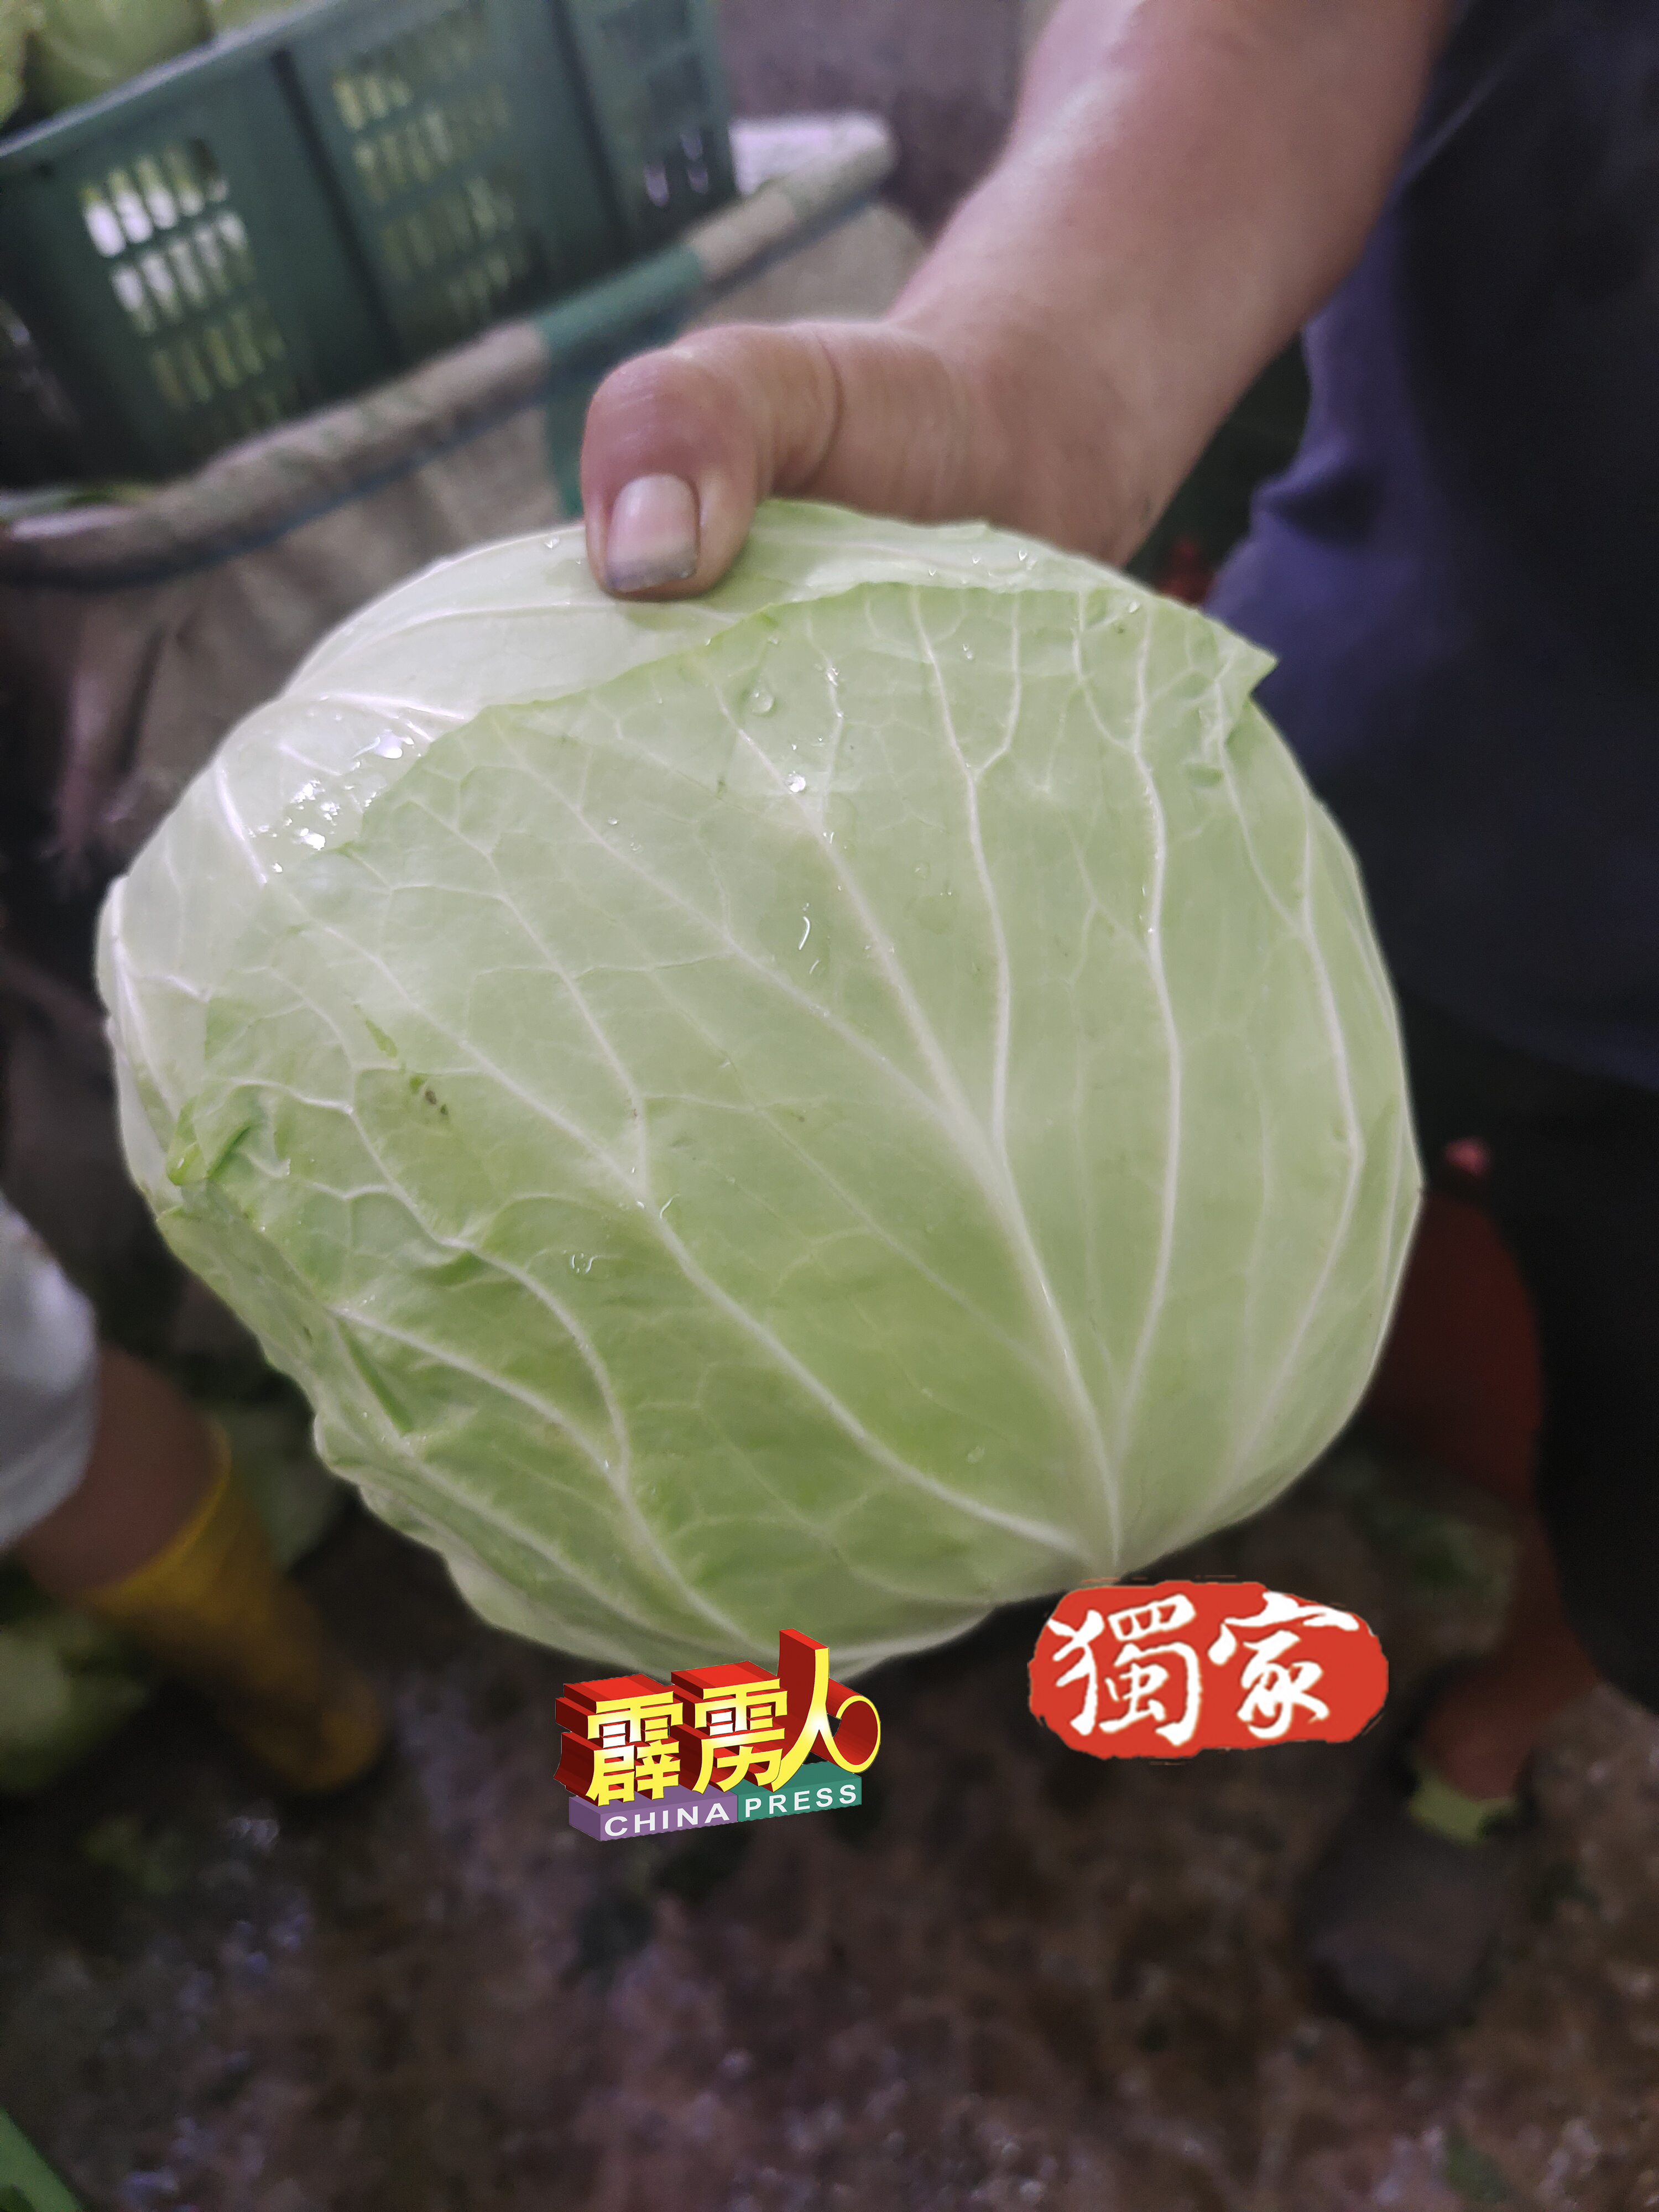 包菜属于耐放型蔬菜，在开斋节前一週，身价会水涨船高。